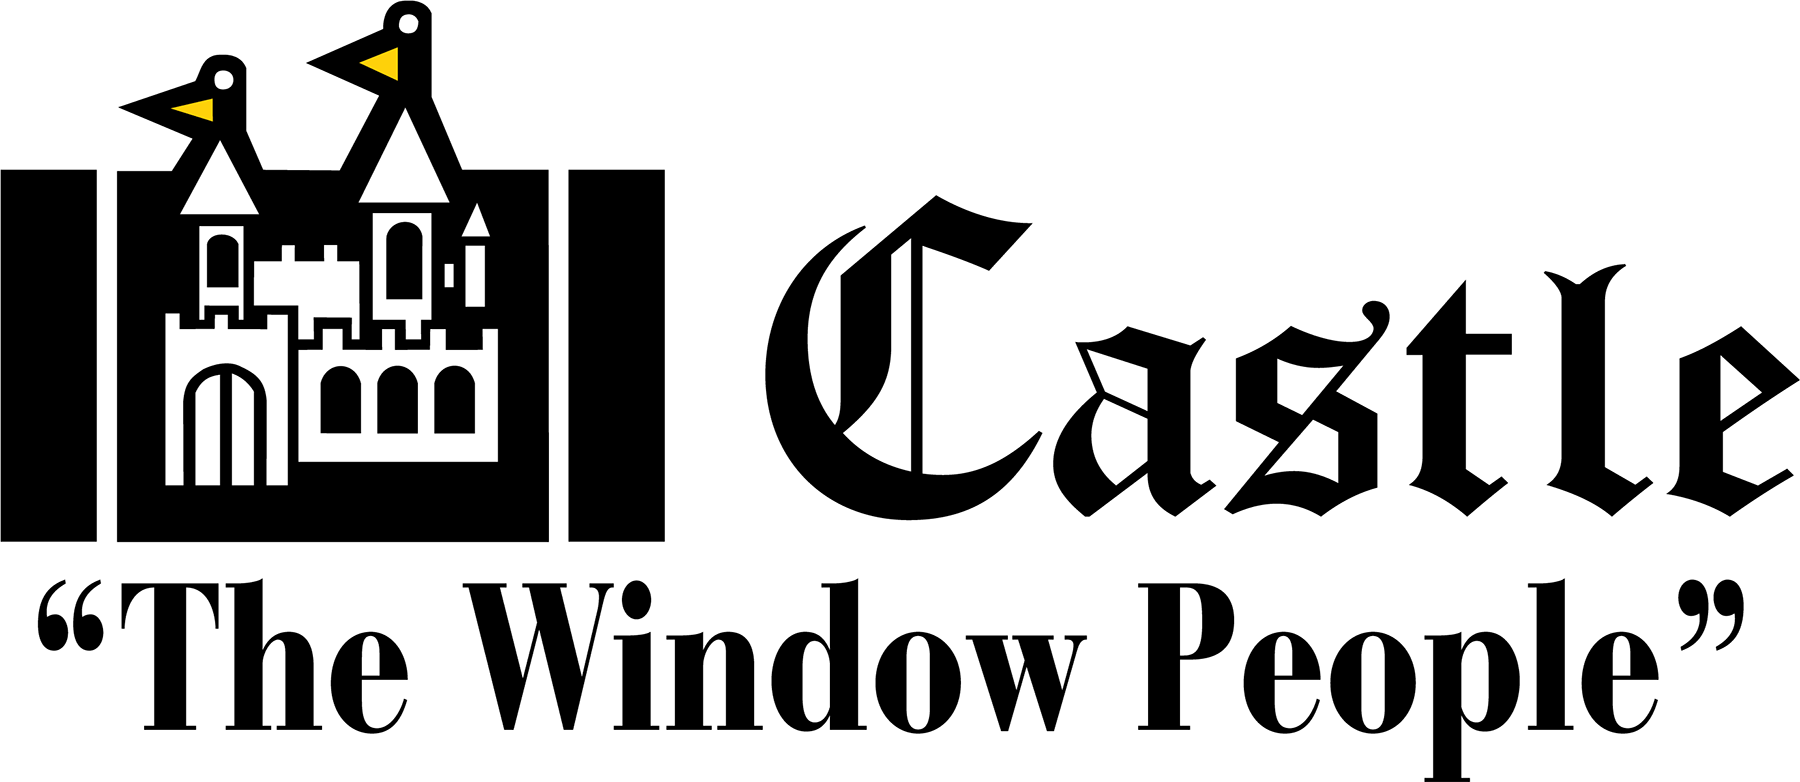 Castle, The Window People Logo